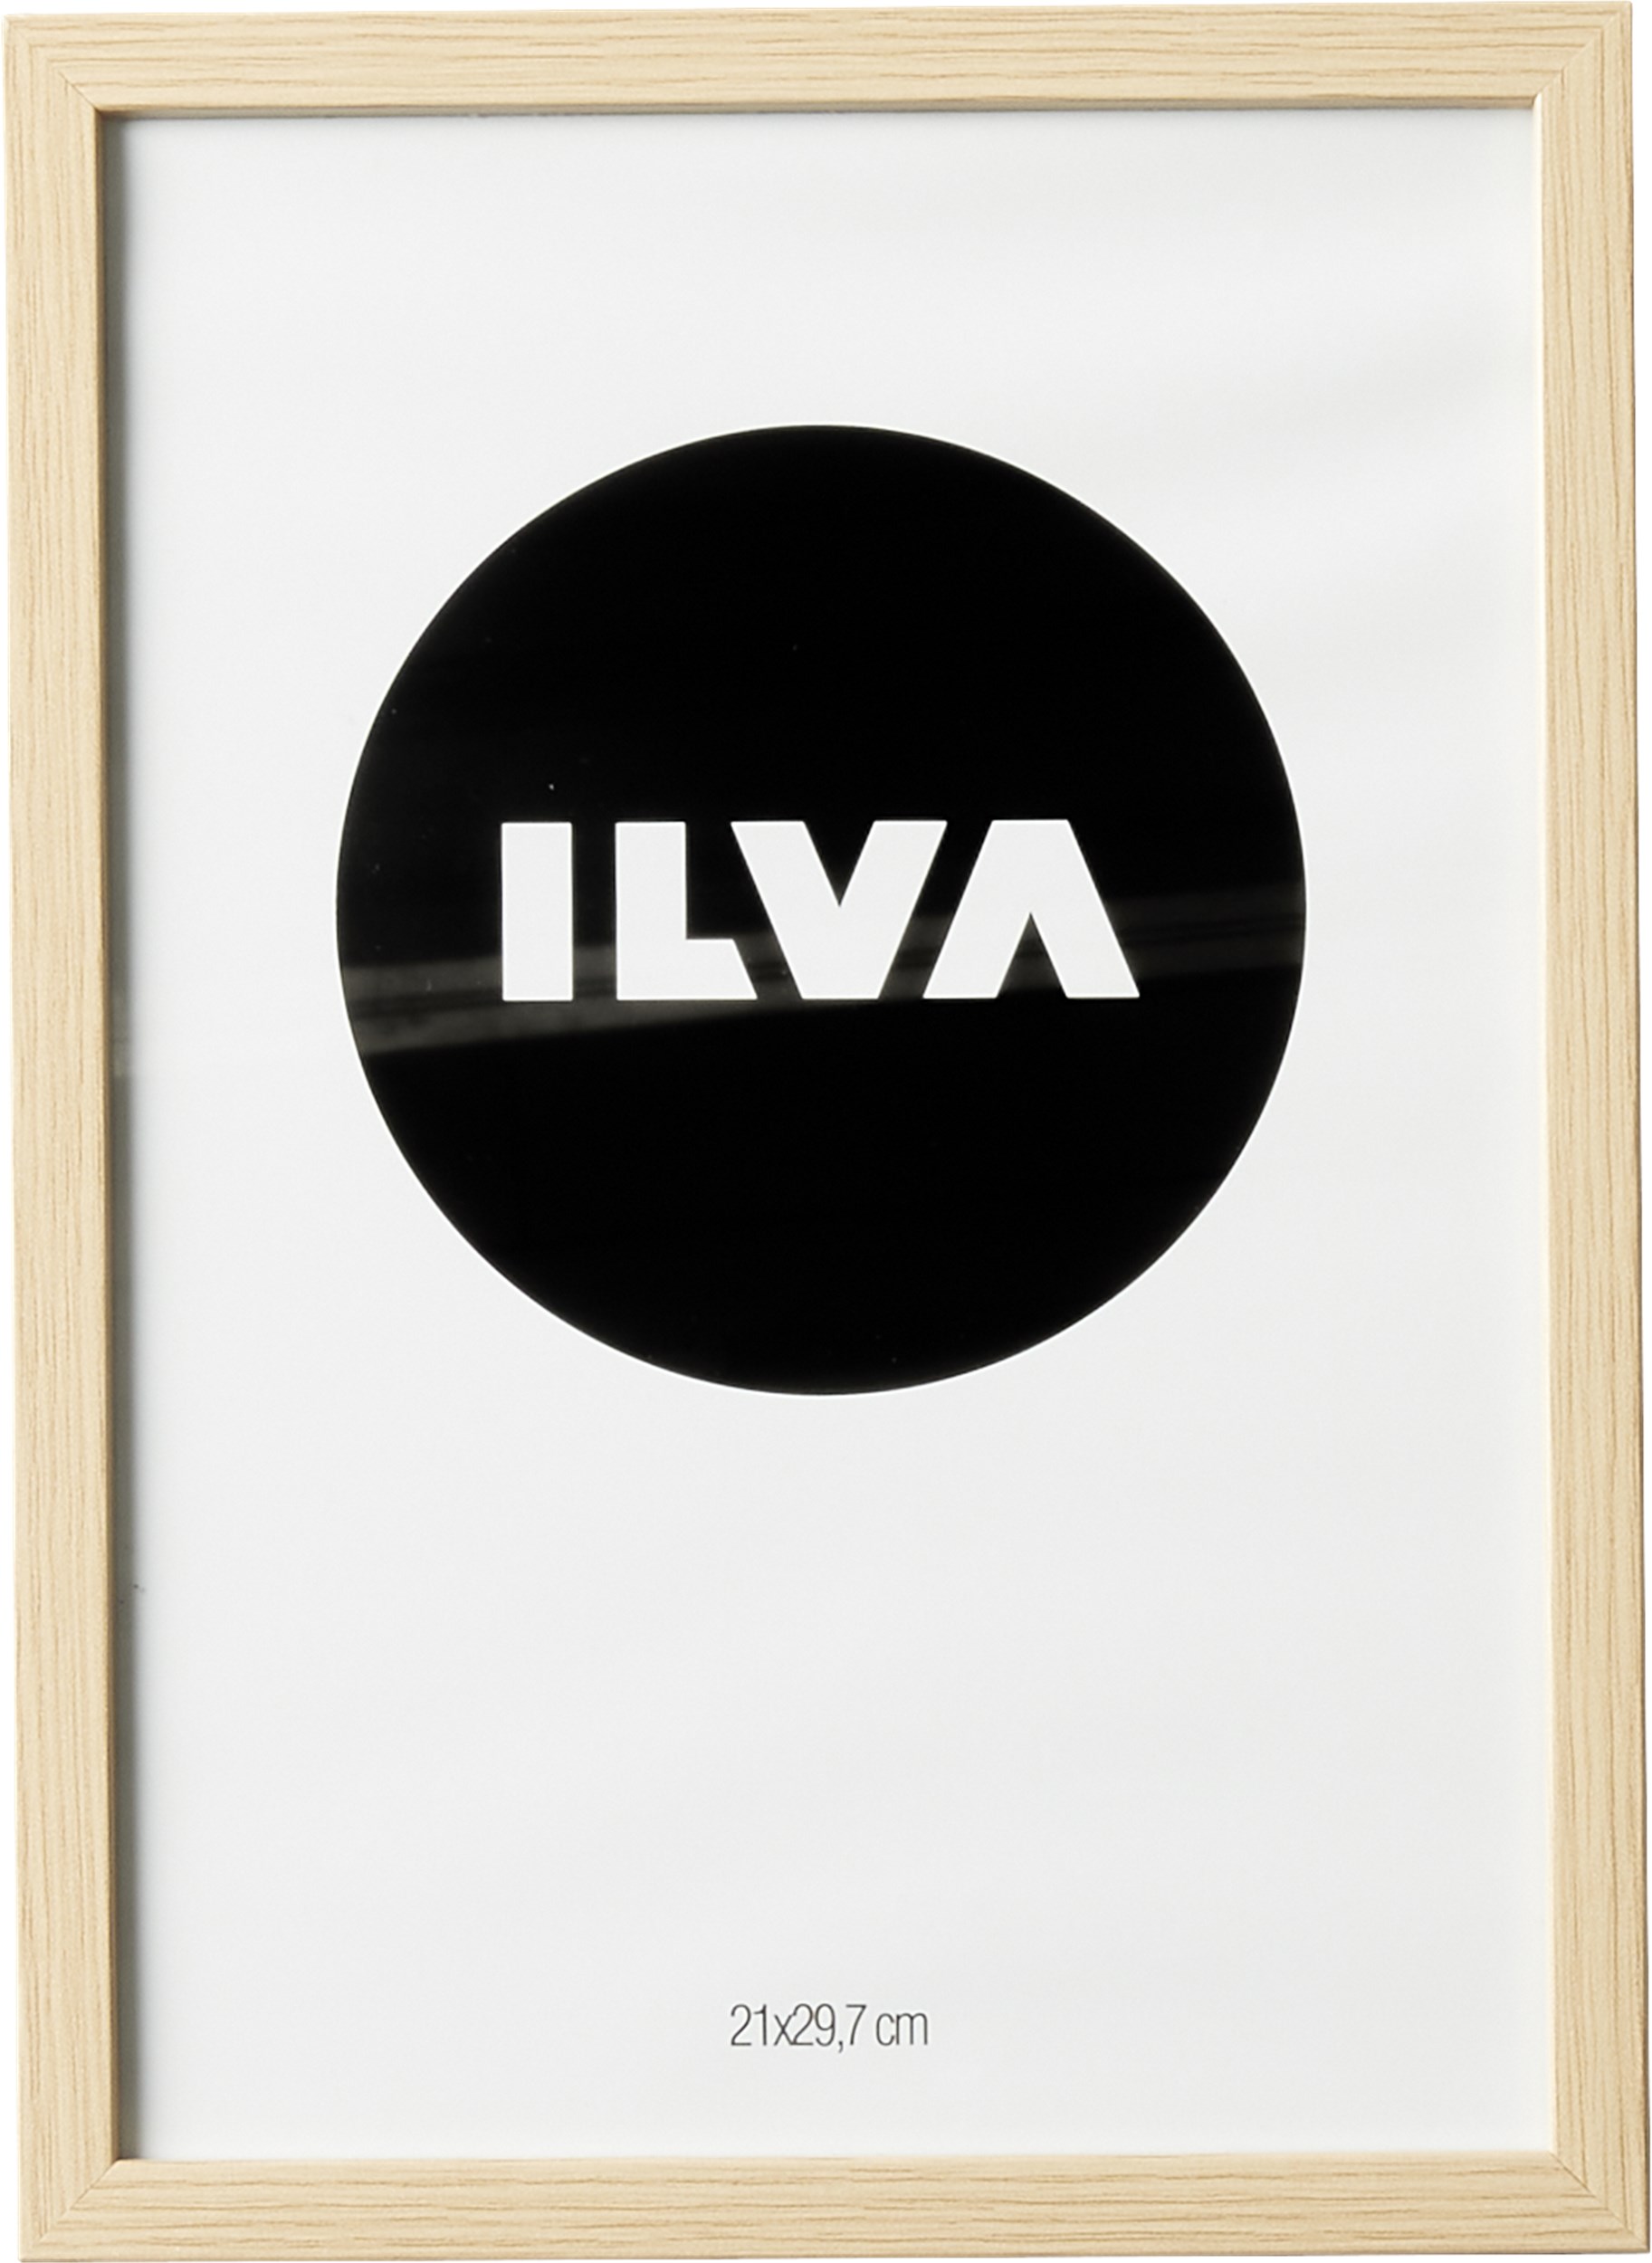 Billedrammer & fotorammer billig rammer til billeder ILVA